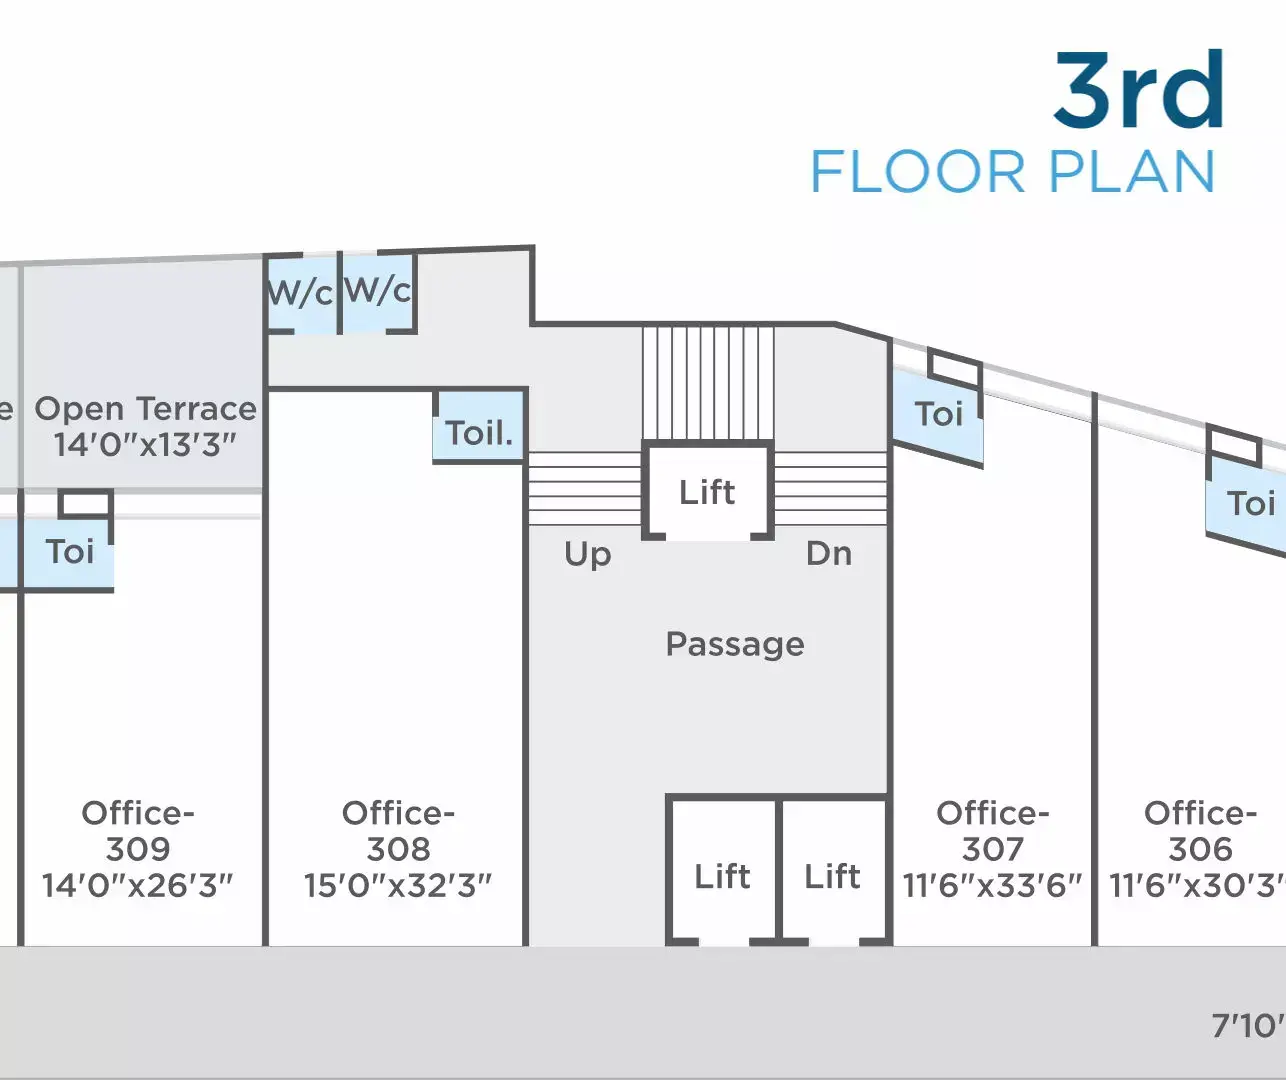 DARSHANAM CROSSROAD - 3rd Floor Plan